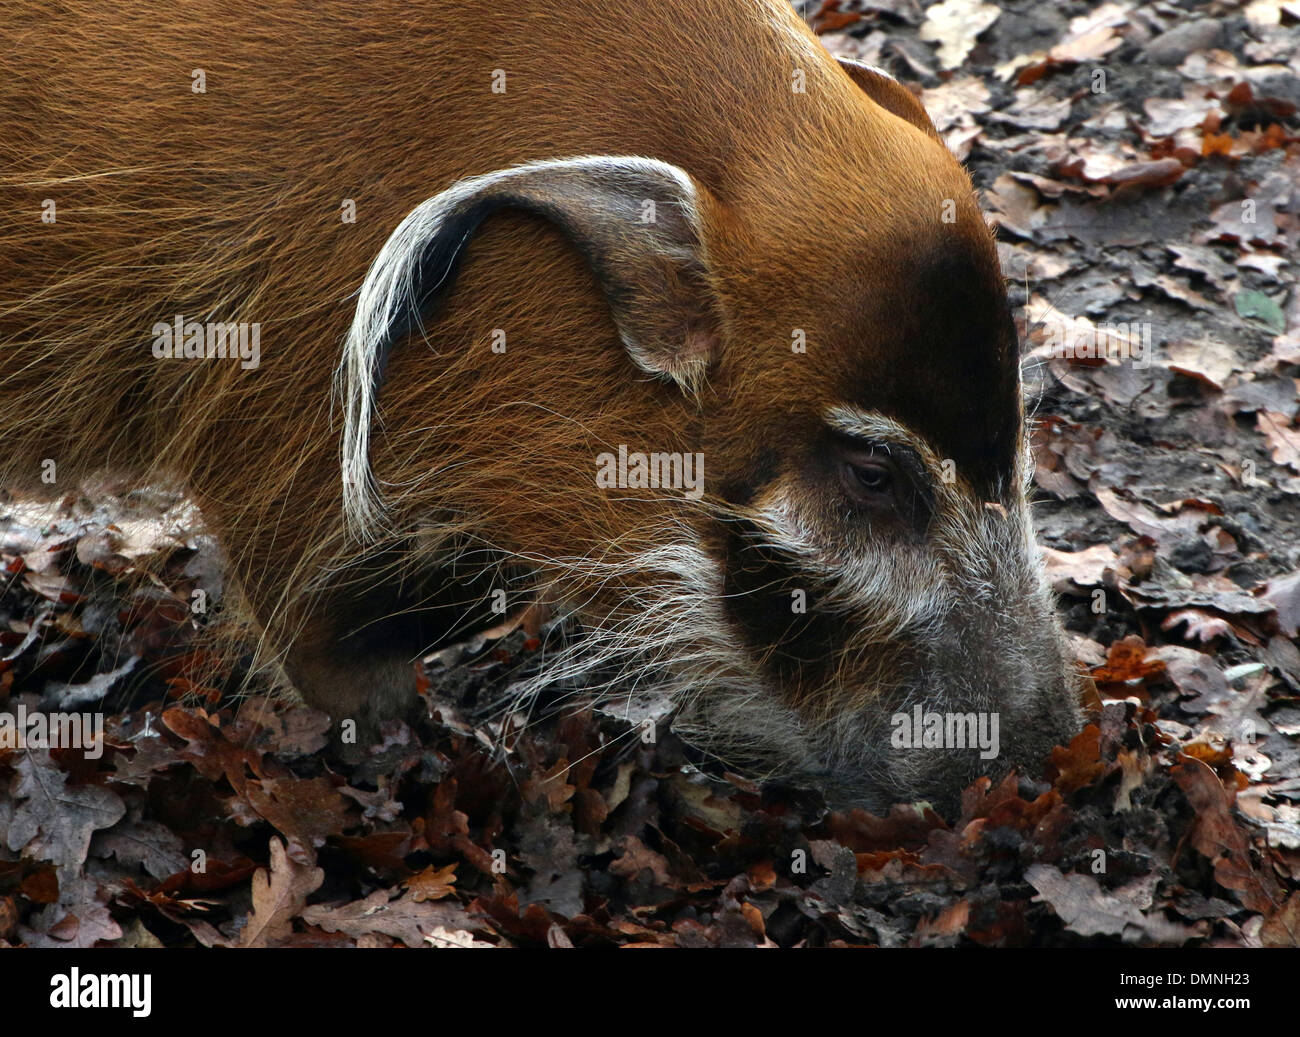 Dettagliato di close-up della testa e del muso di un Africano del Fiume Rosso porco o maiale Bush (Potamochoerus porcus) Foto Stock